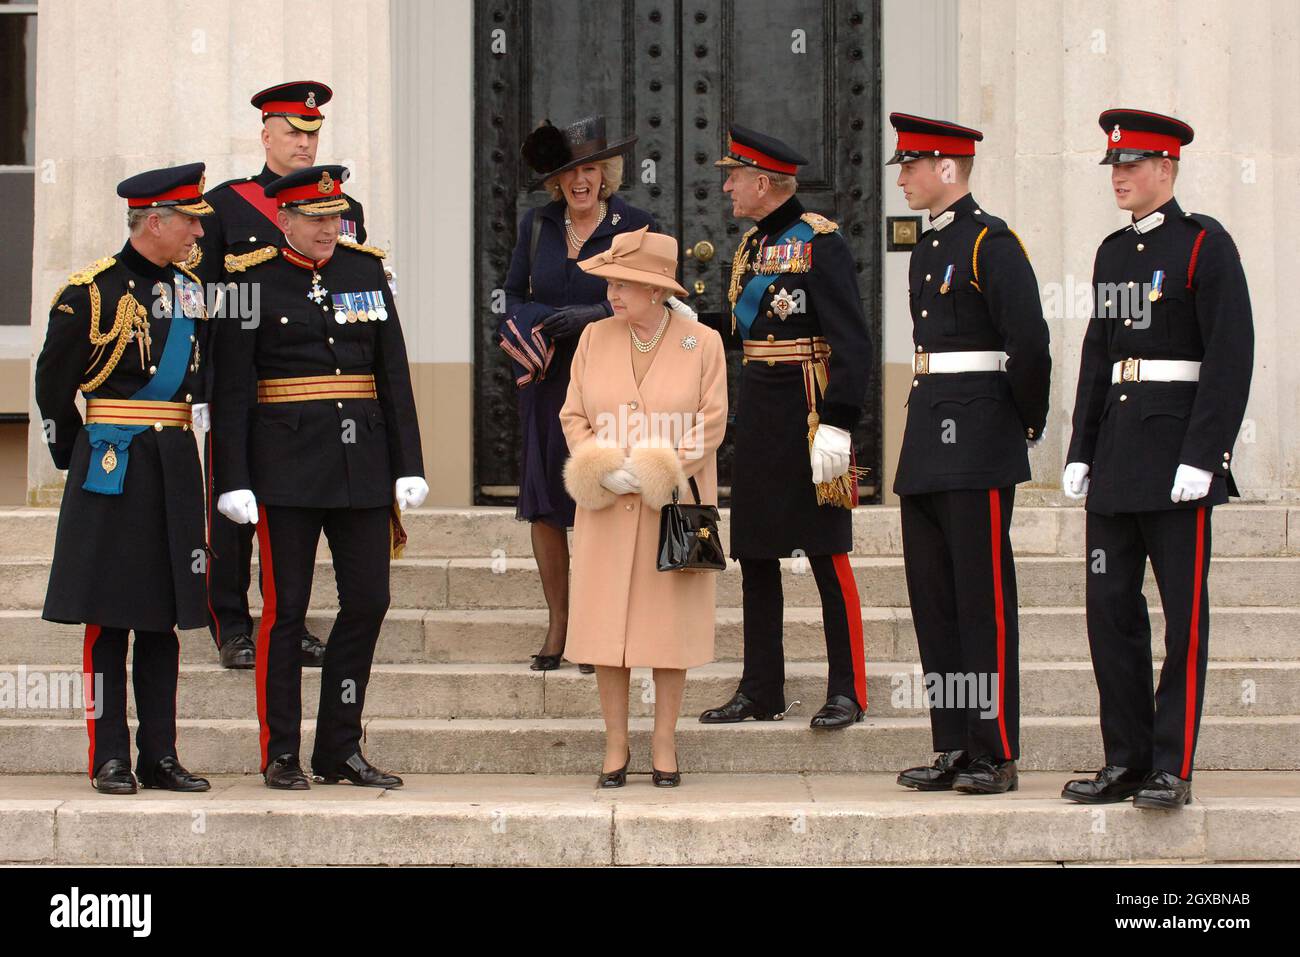 Le Prince Charles, Prince de Galles (L), la Reine Elizabeth II le Prince PhiIip, duc d'Édimbourg (3e de droite), Camilla, Duchesse de Cornwall, le Prince William et le Prince Harry (R) se posent ensemble. Banque D'Images